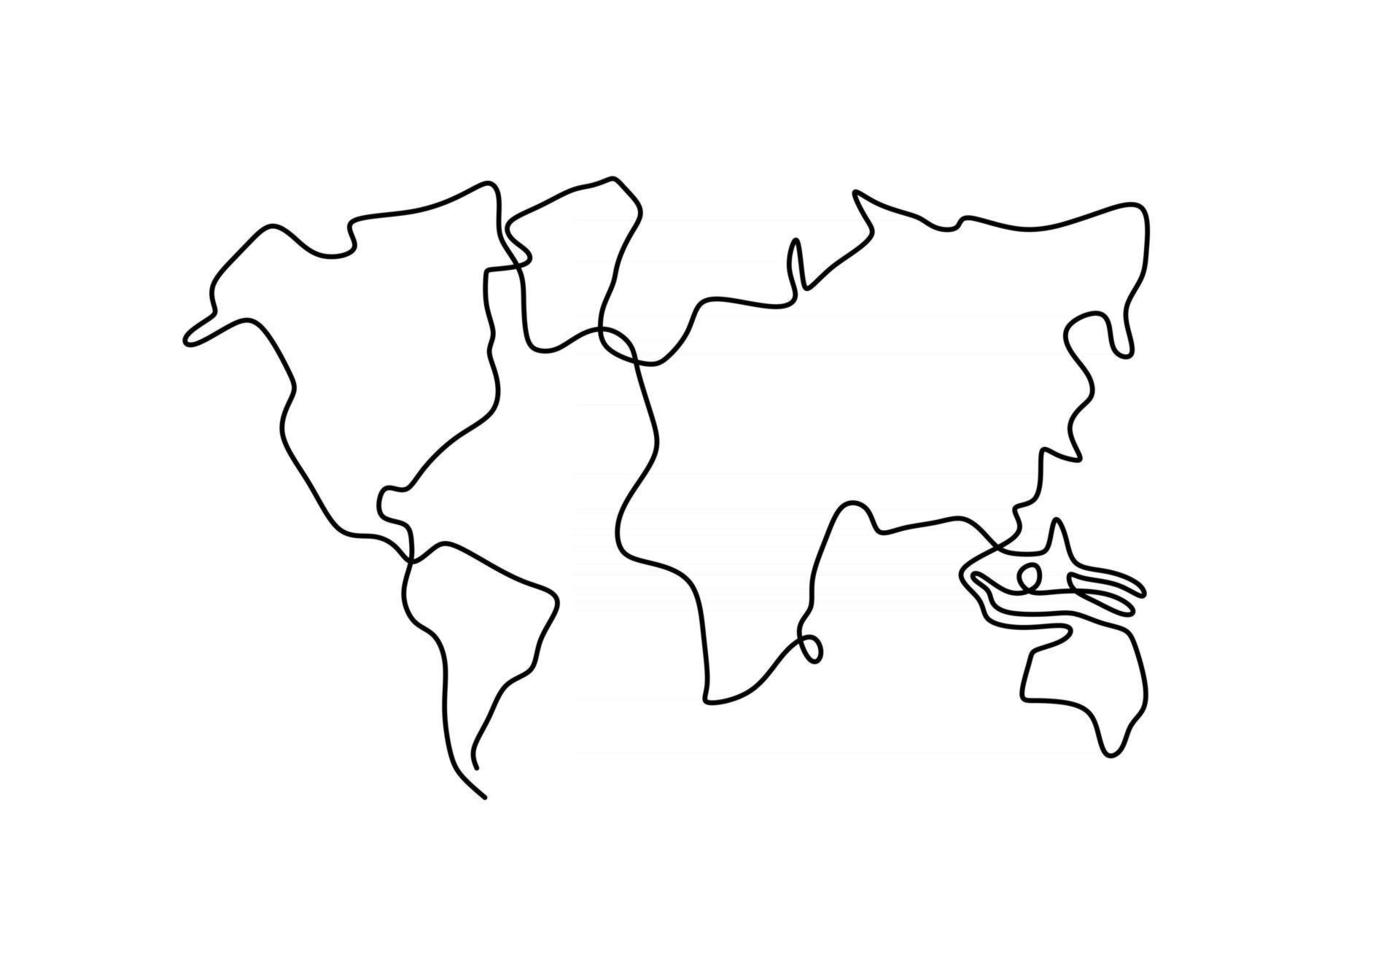 mapa-múndi desenho de uma linha em fundo branco isolado vetor